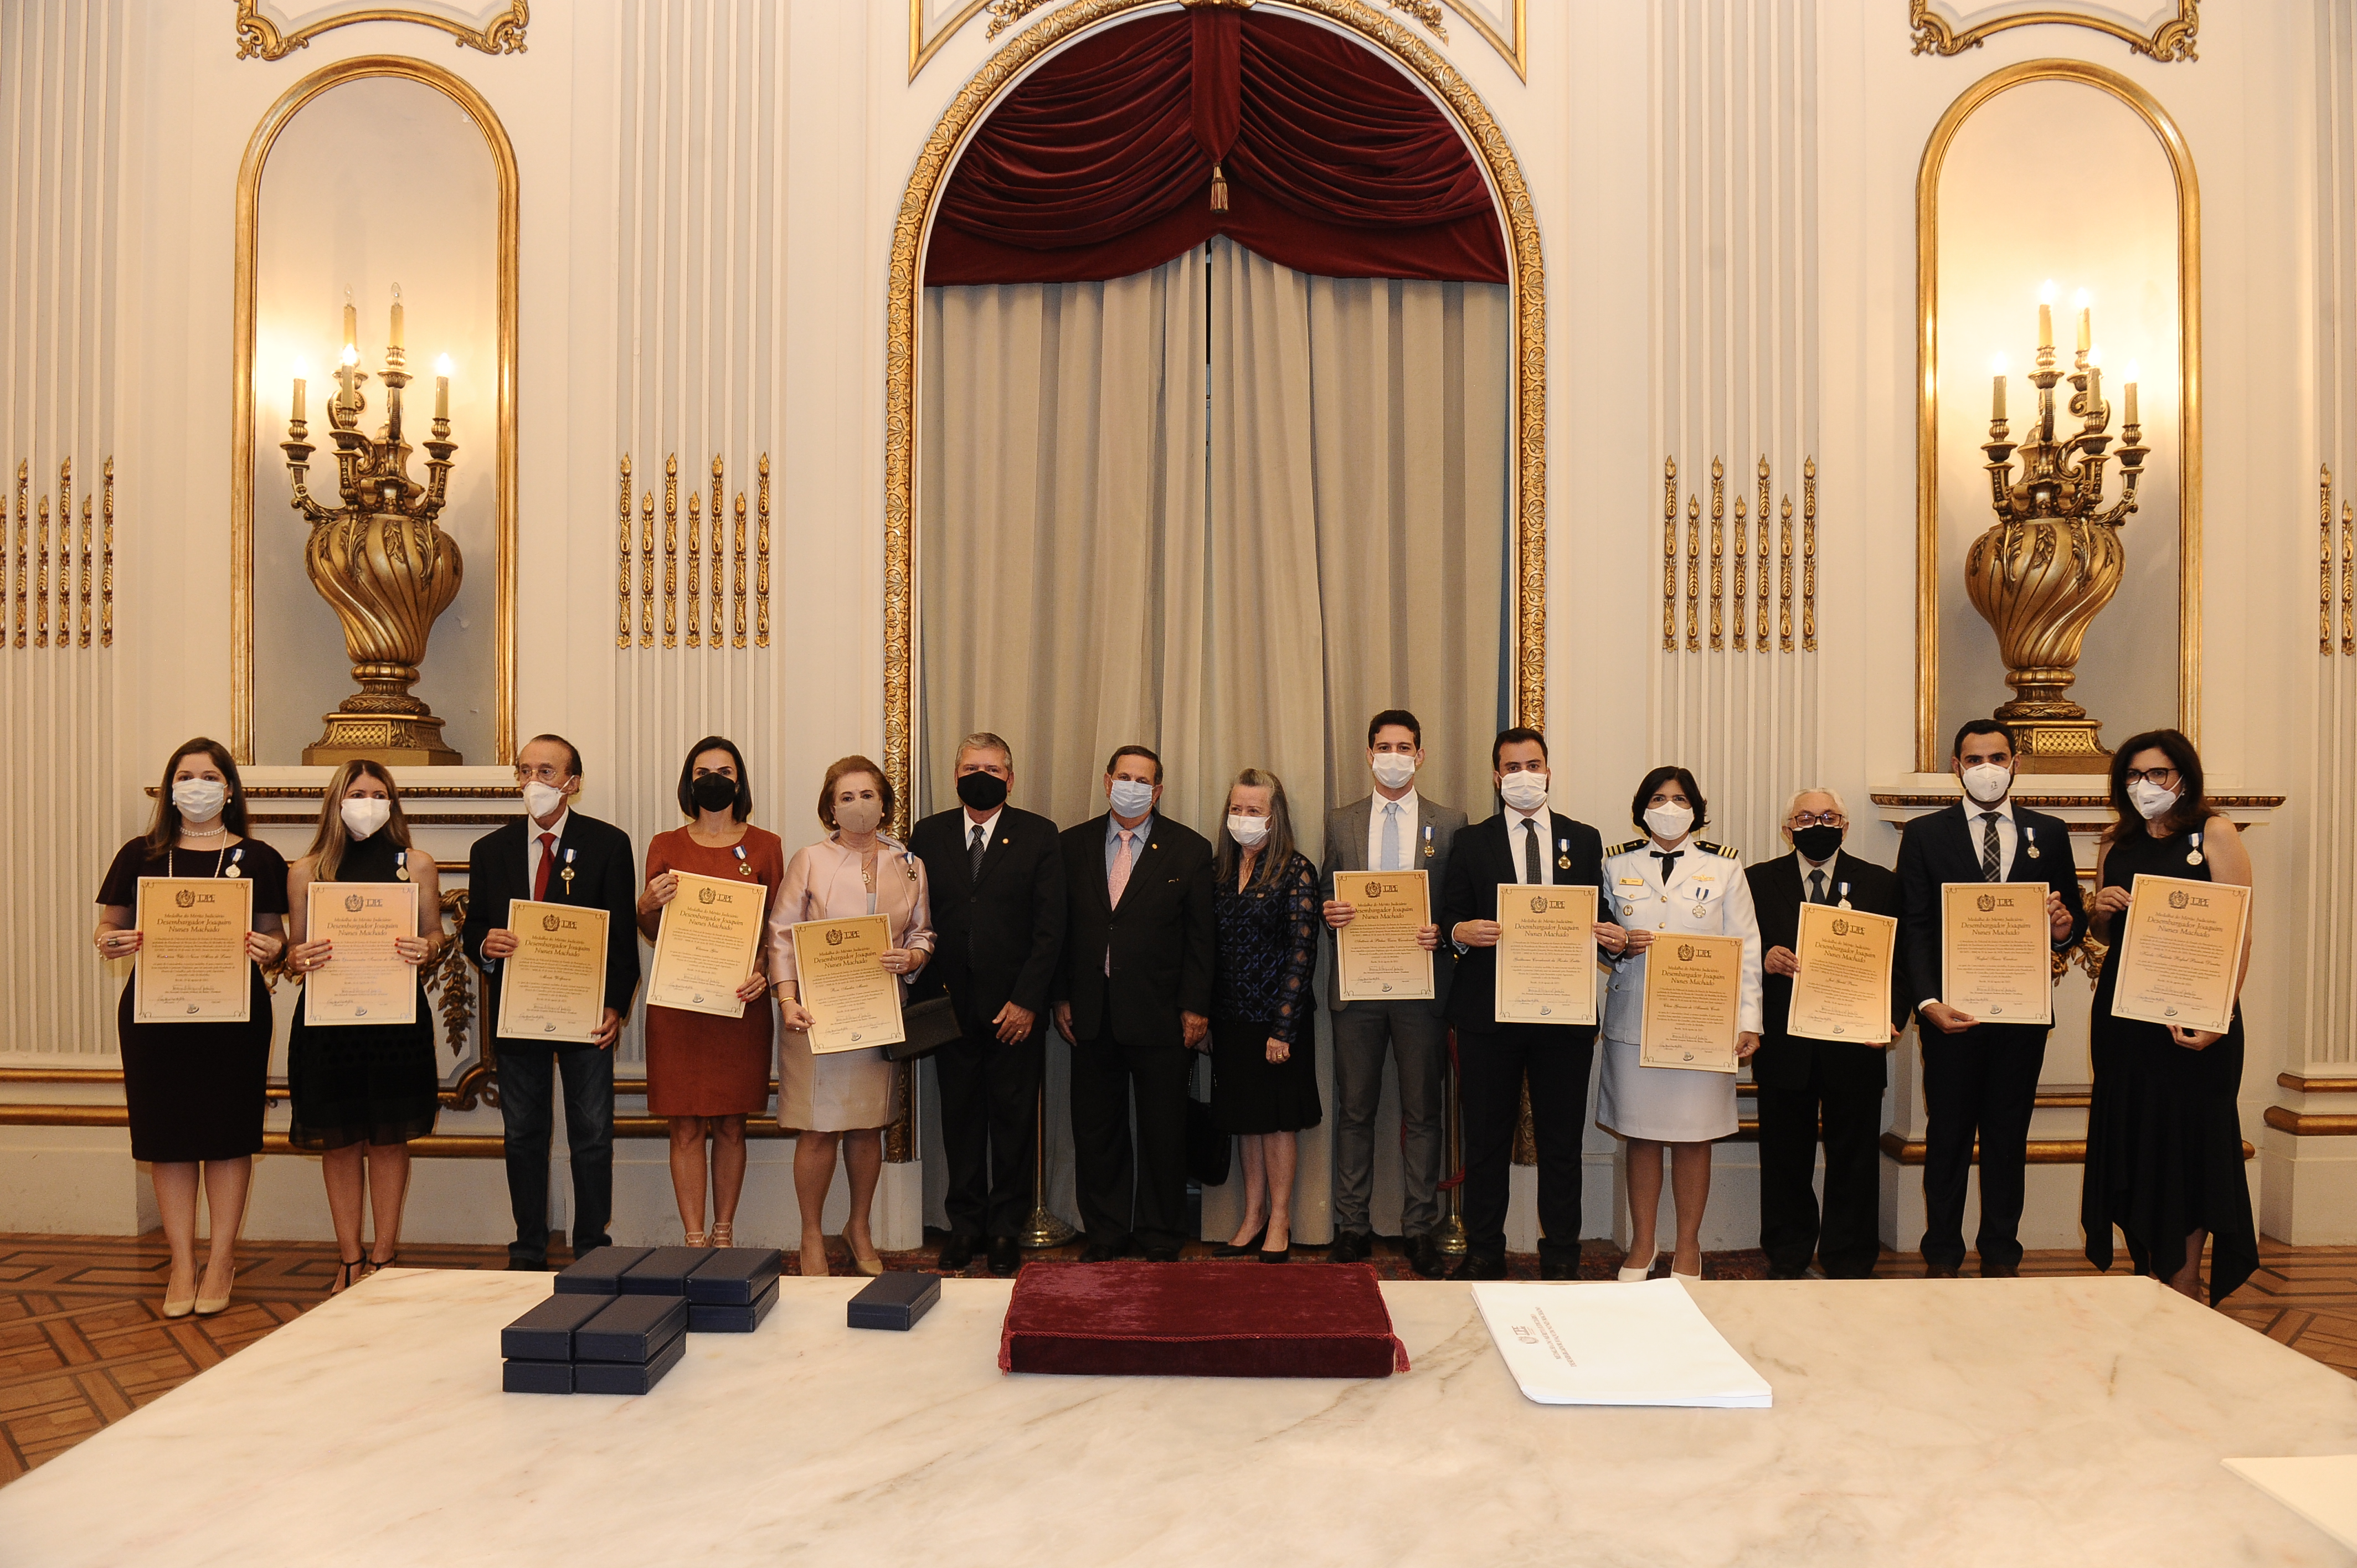 Homens e mulheres, lado a lado, segurando um diploma